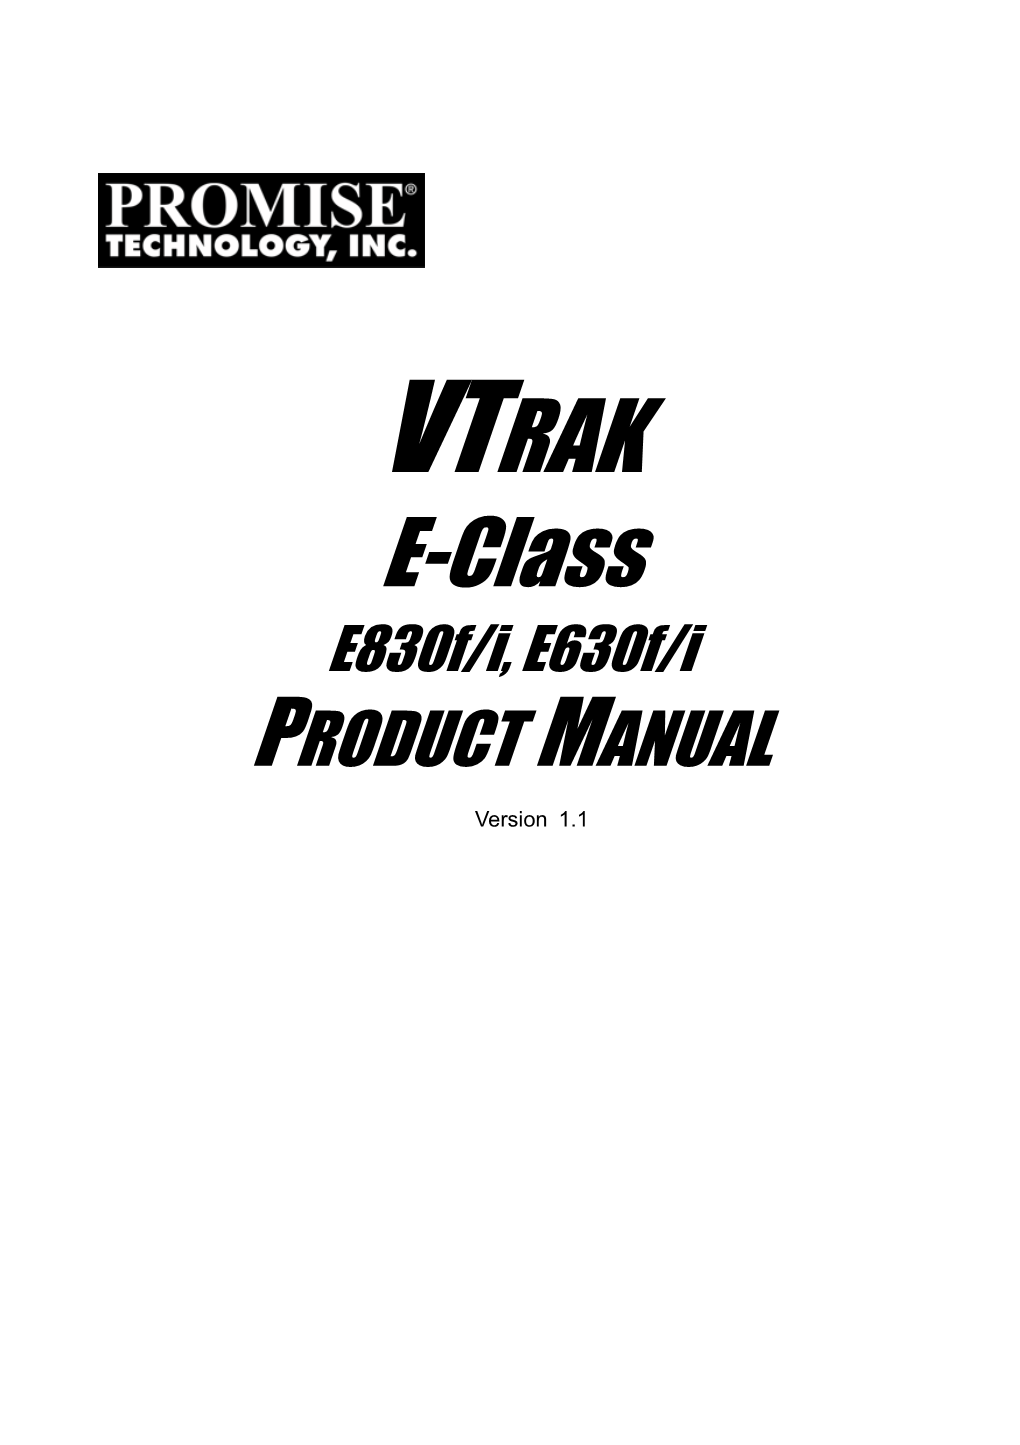 VTRAK E-Class E830f/I, E630f/I PRODUCT MANUAL